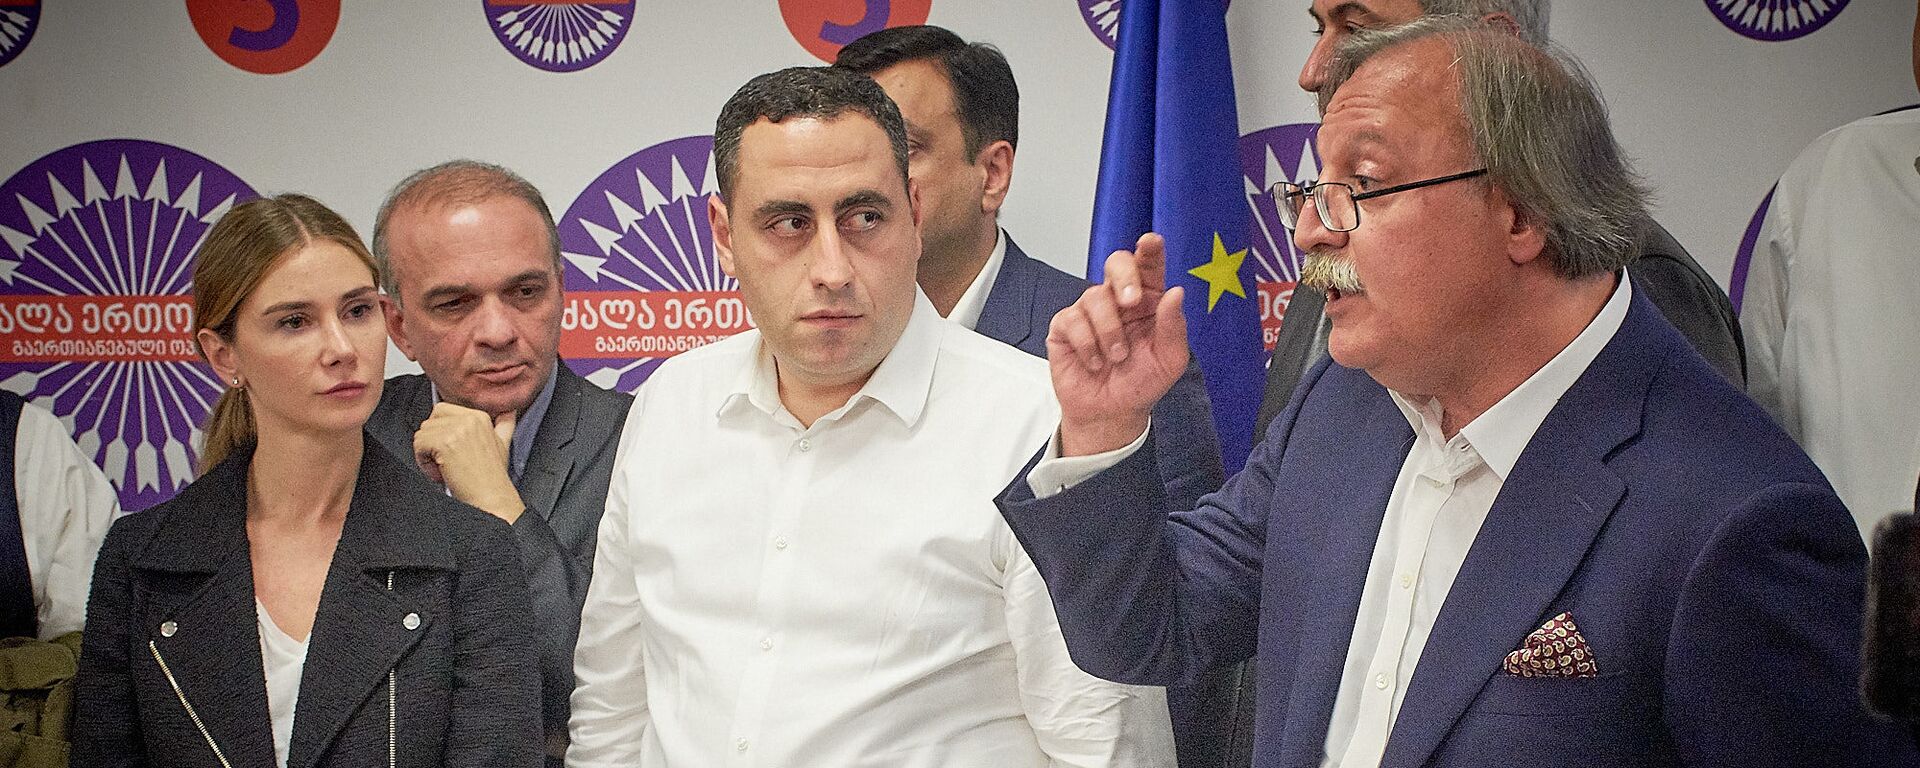 Григол Вашадзе и Георгий Вашадзе в избирательном штабе ждут итогов голосования - Sputnik Грузия, 1920, 27.08.2021